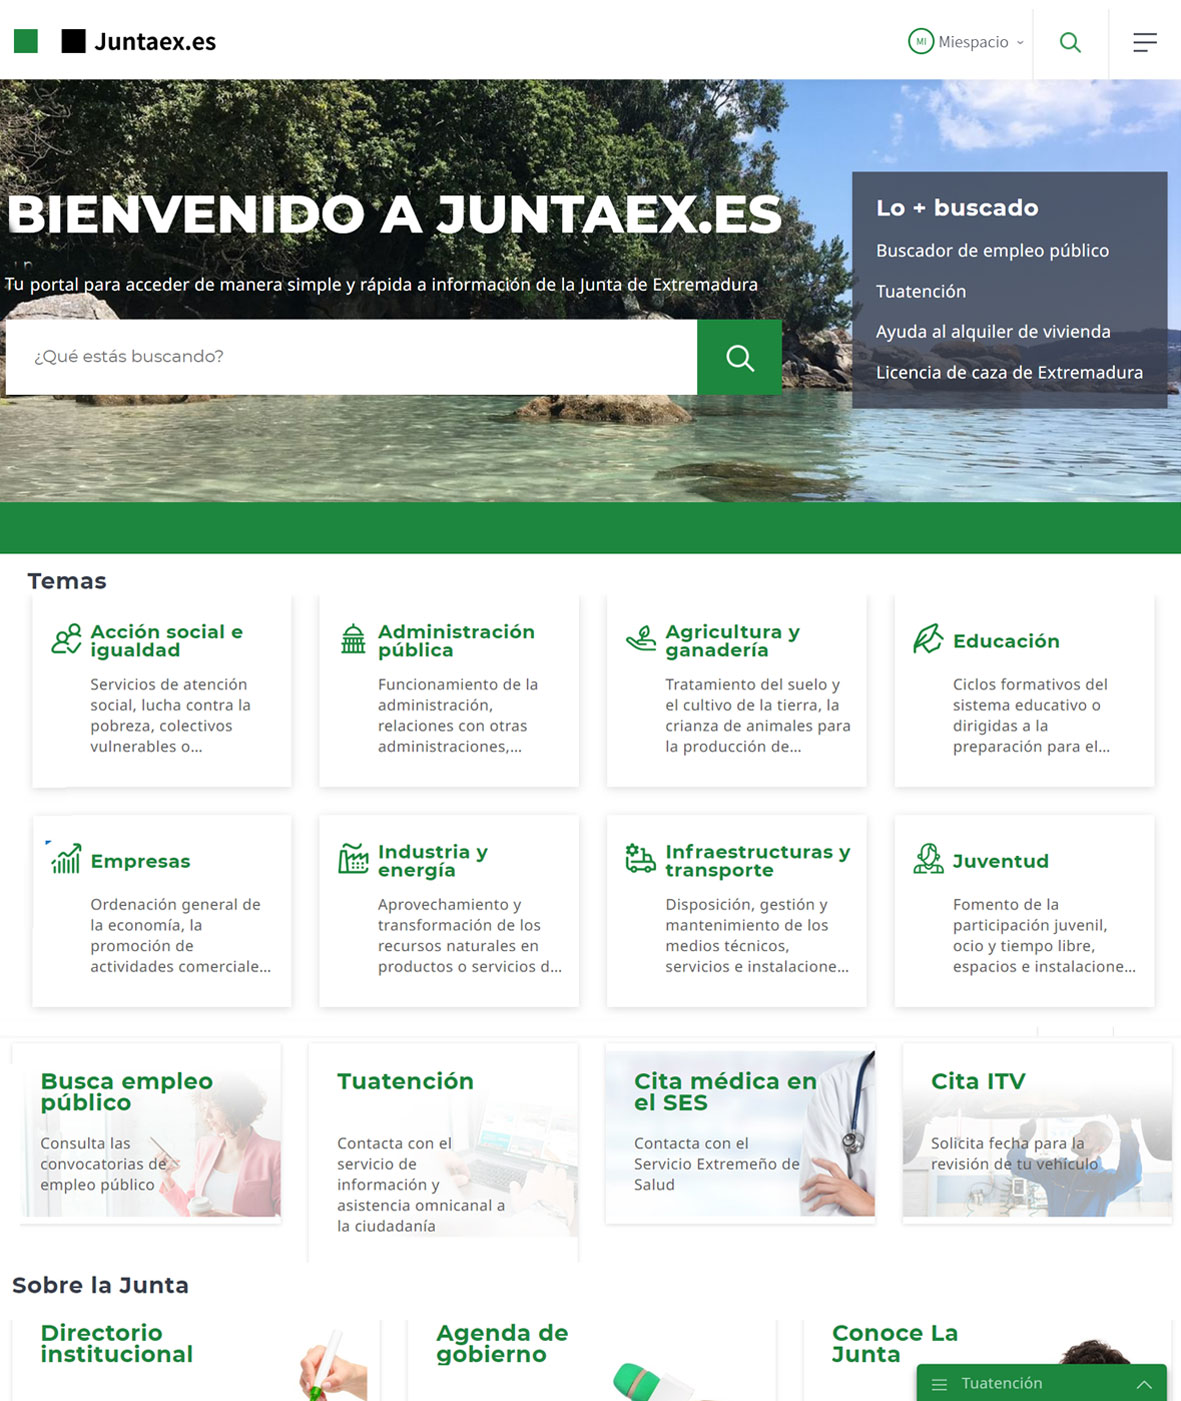 Nuevo portal web corporativo de la Junta de Extremadura